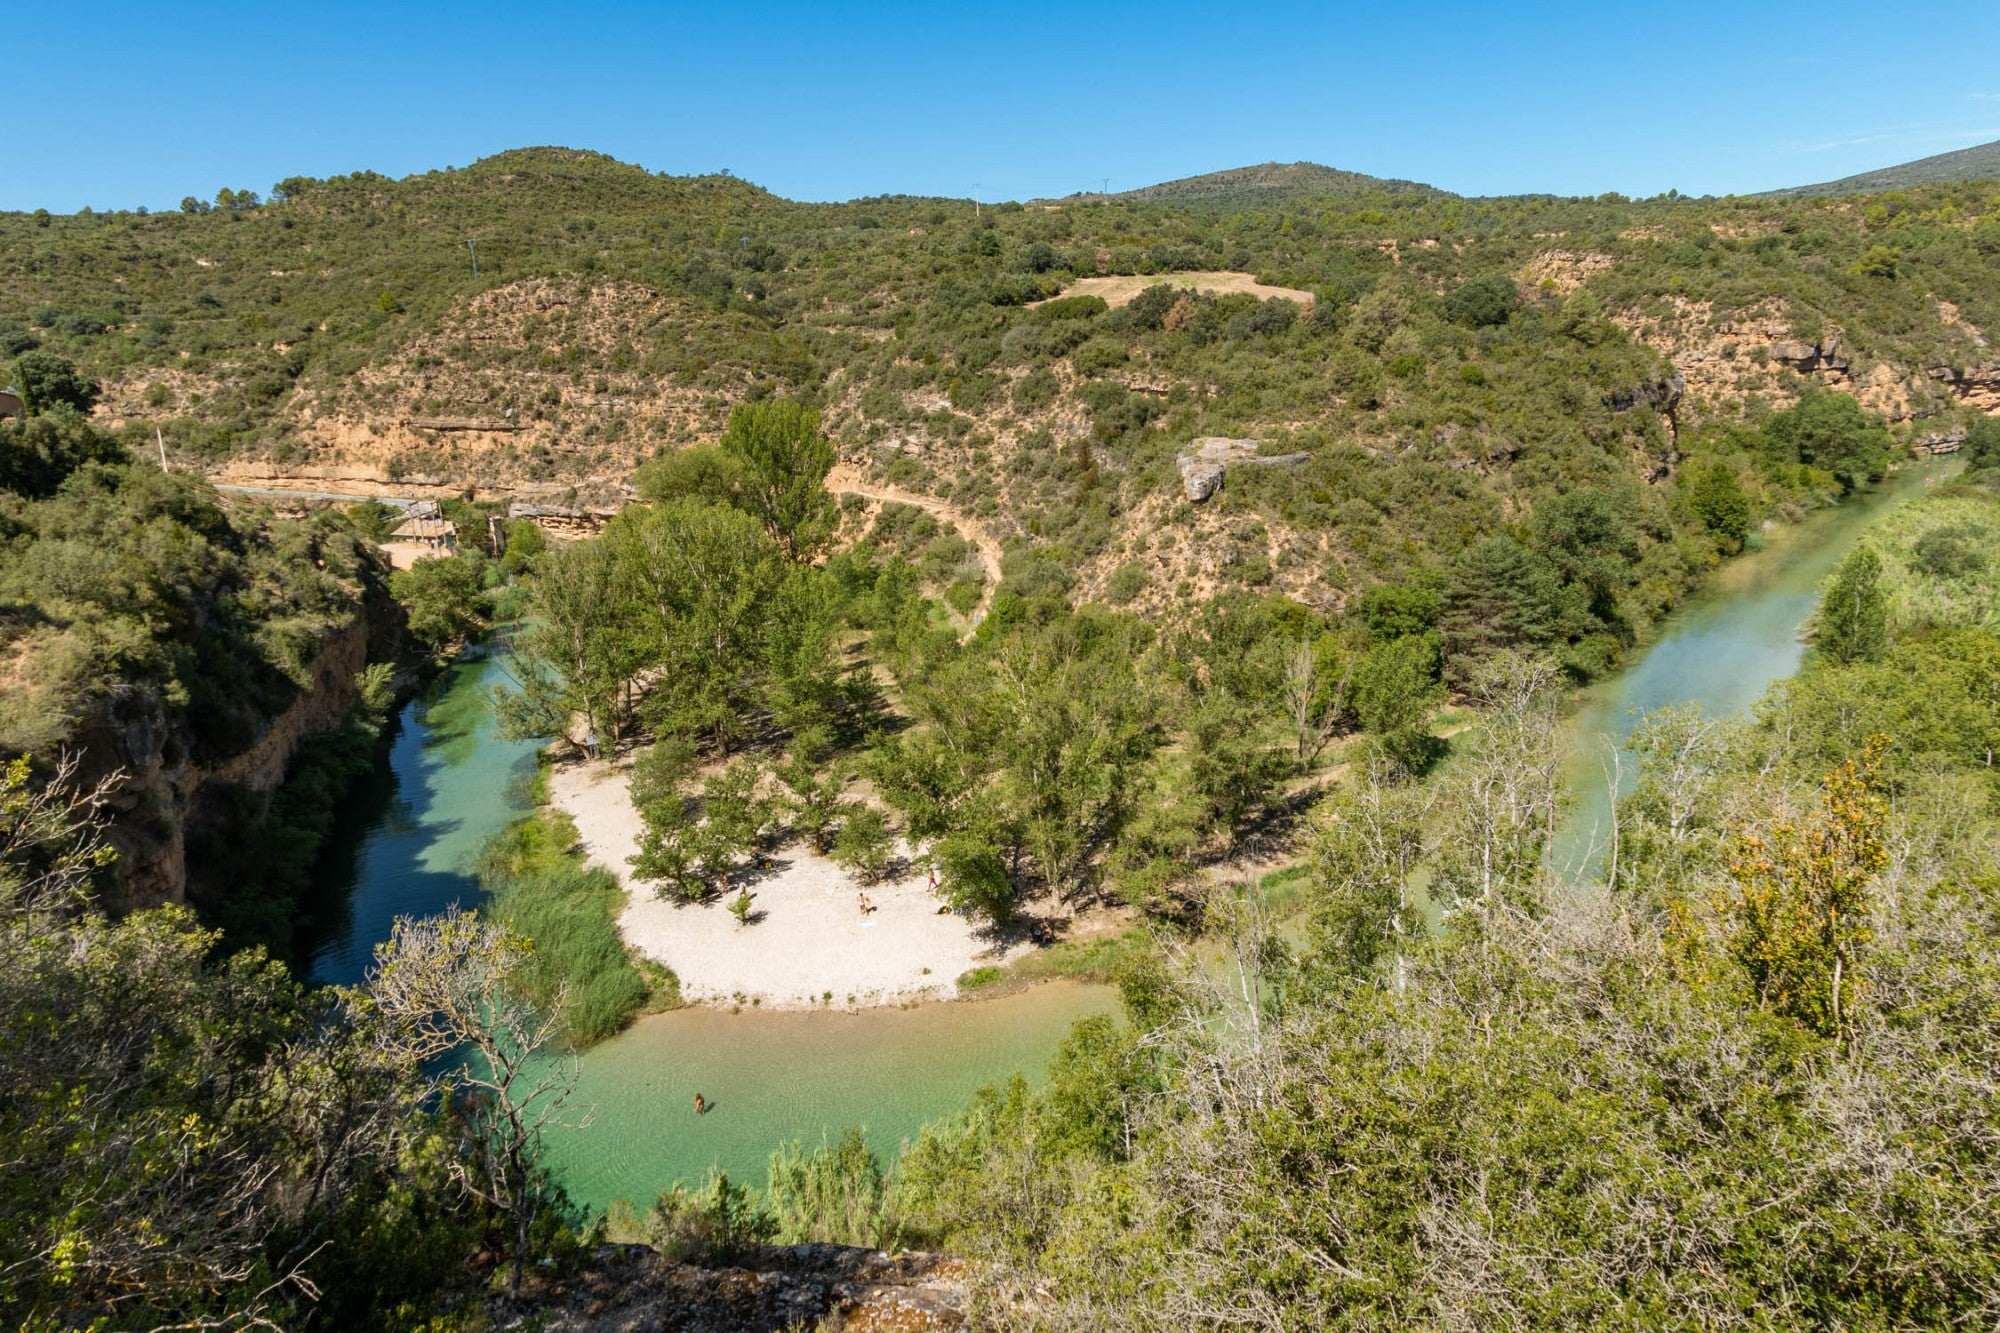 Meandro de Somontano de Barbastro en el río Alcanadre, del Parque Natural de Guara (Huesca).